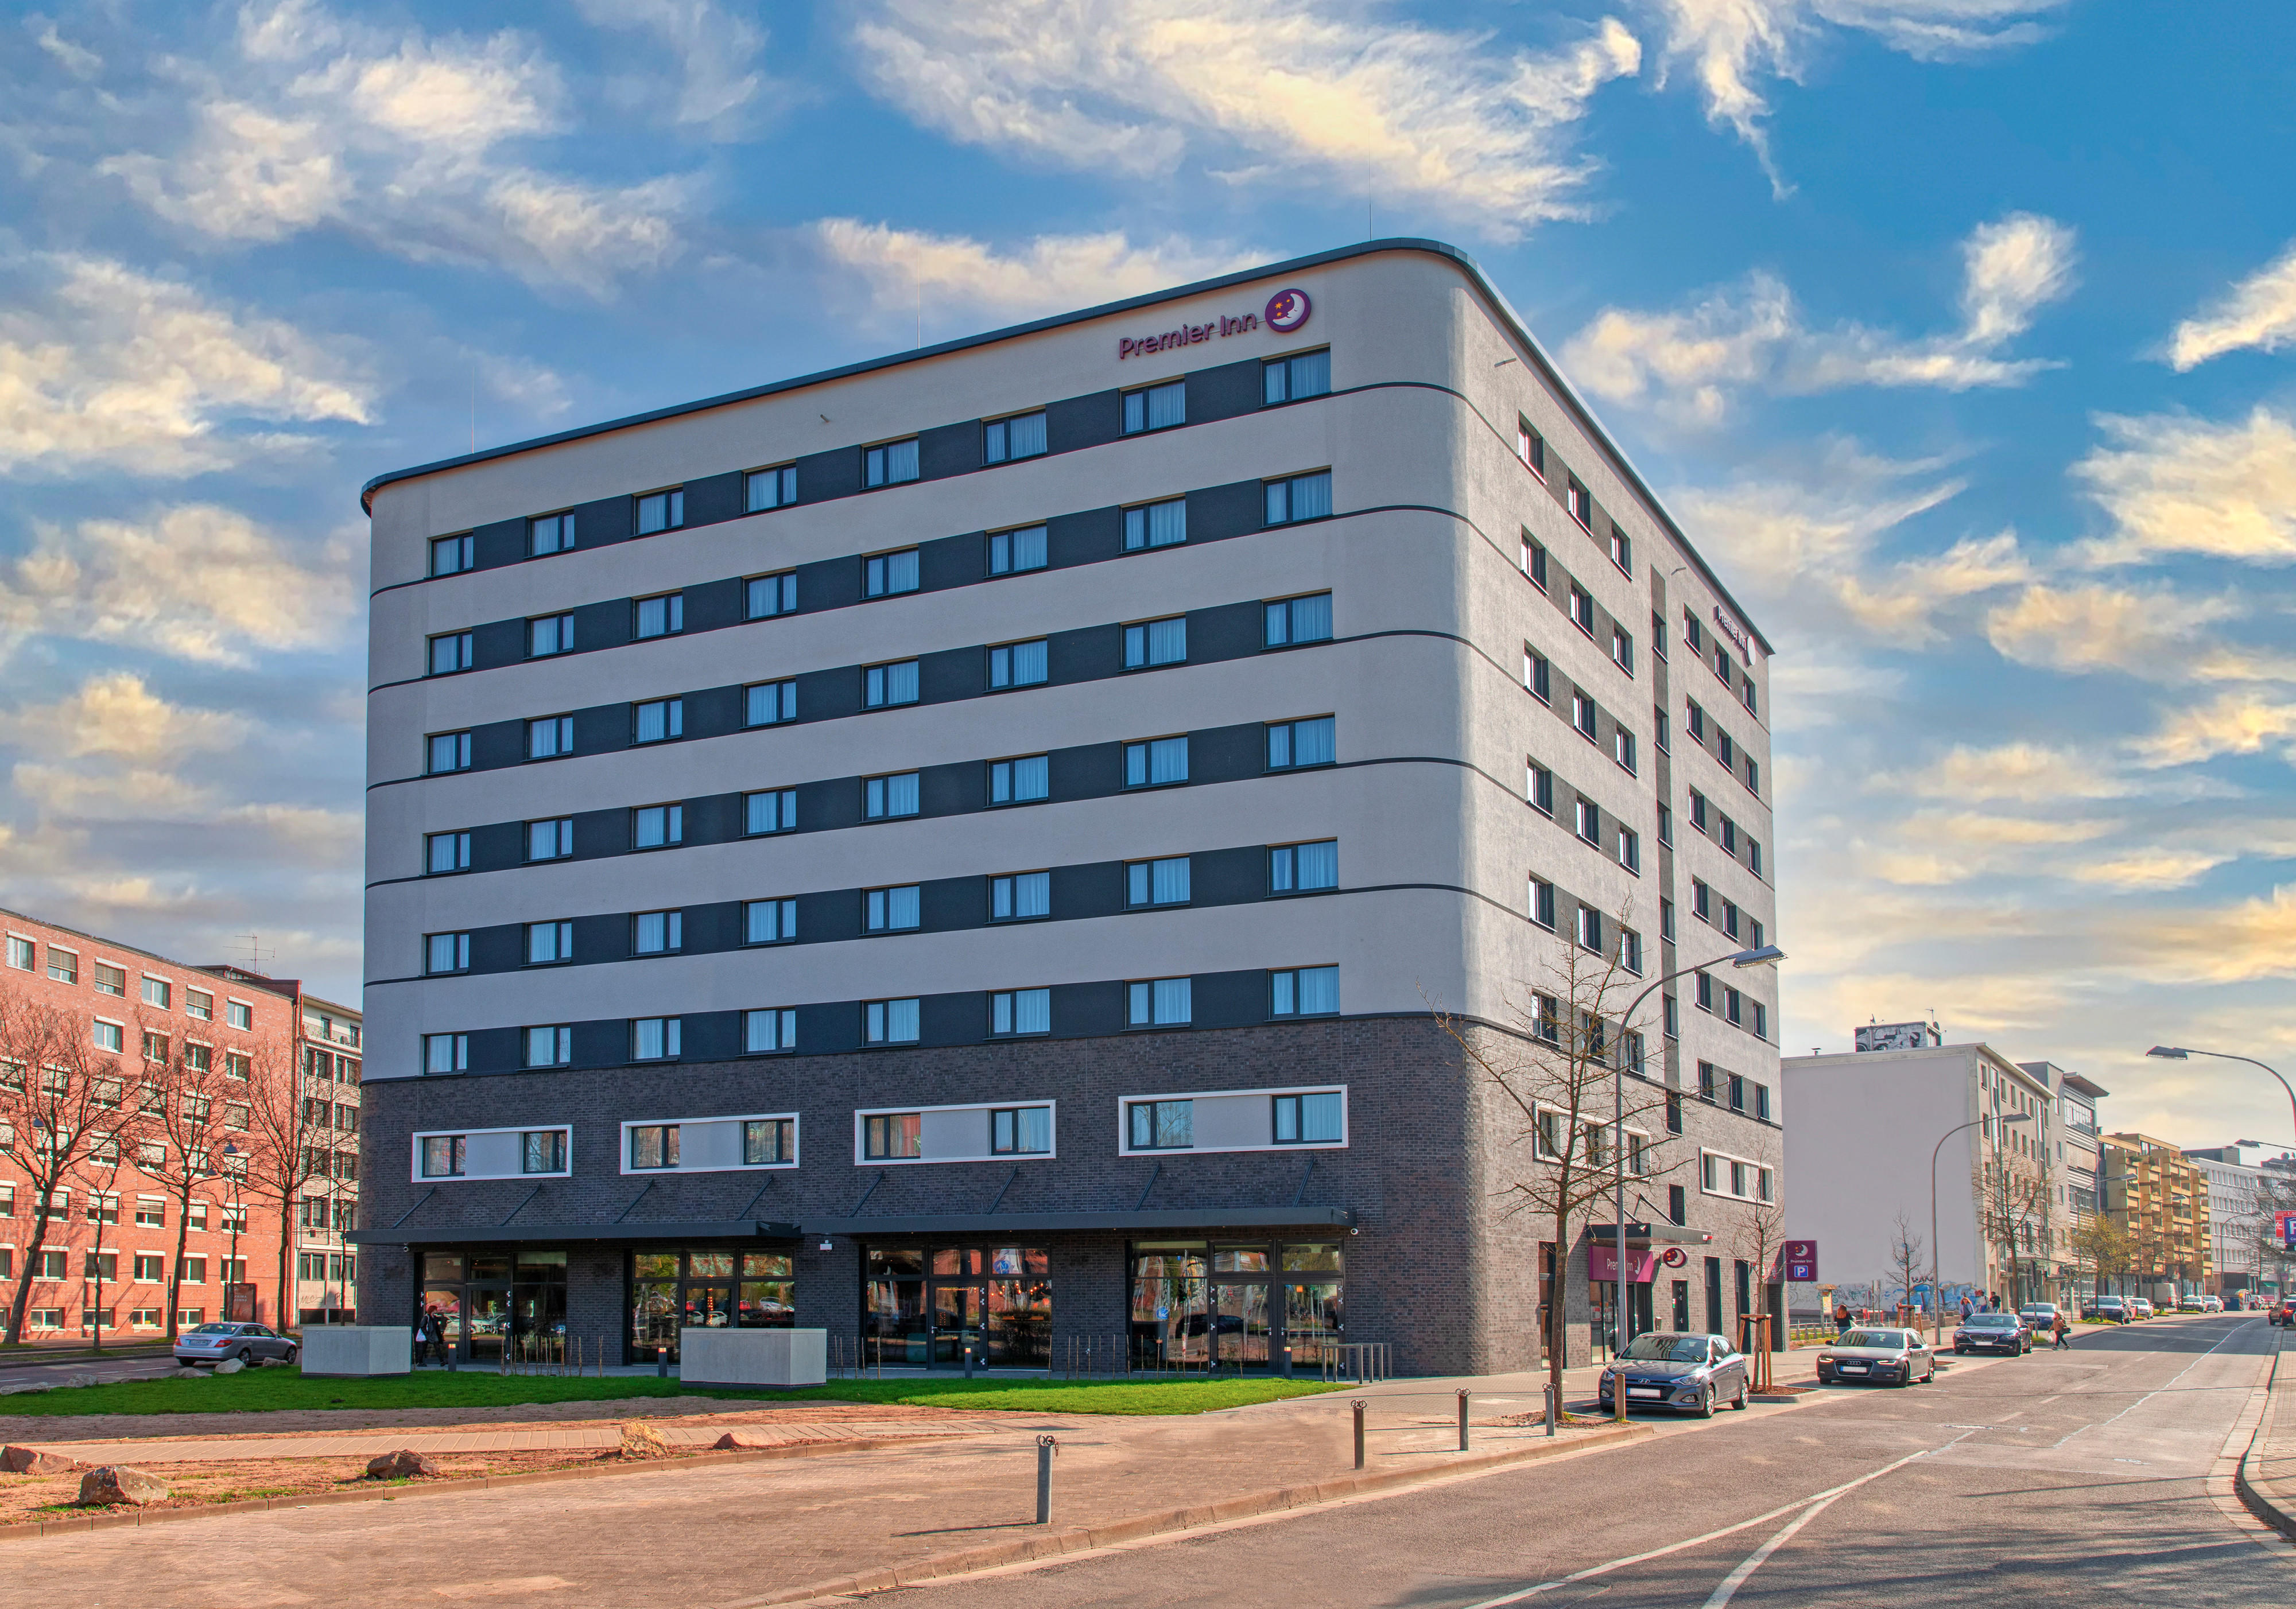 Premier Inn Saarbrucken City Congresshalle hotel, Hafenstrasse 49 in Saarbruecken